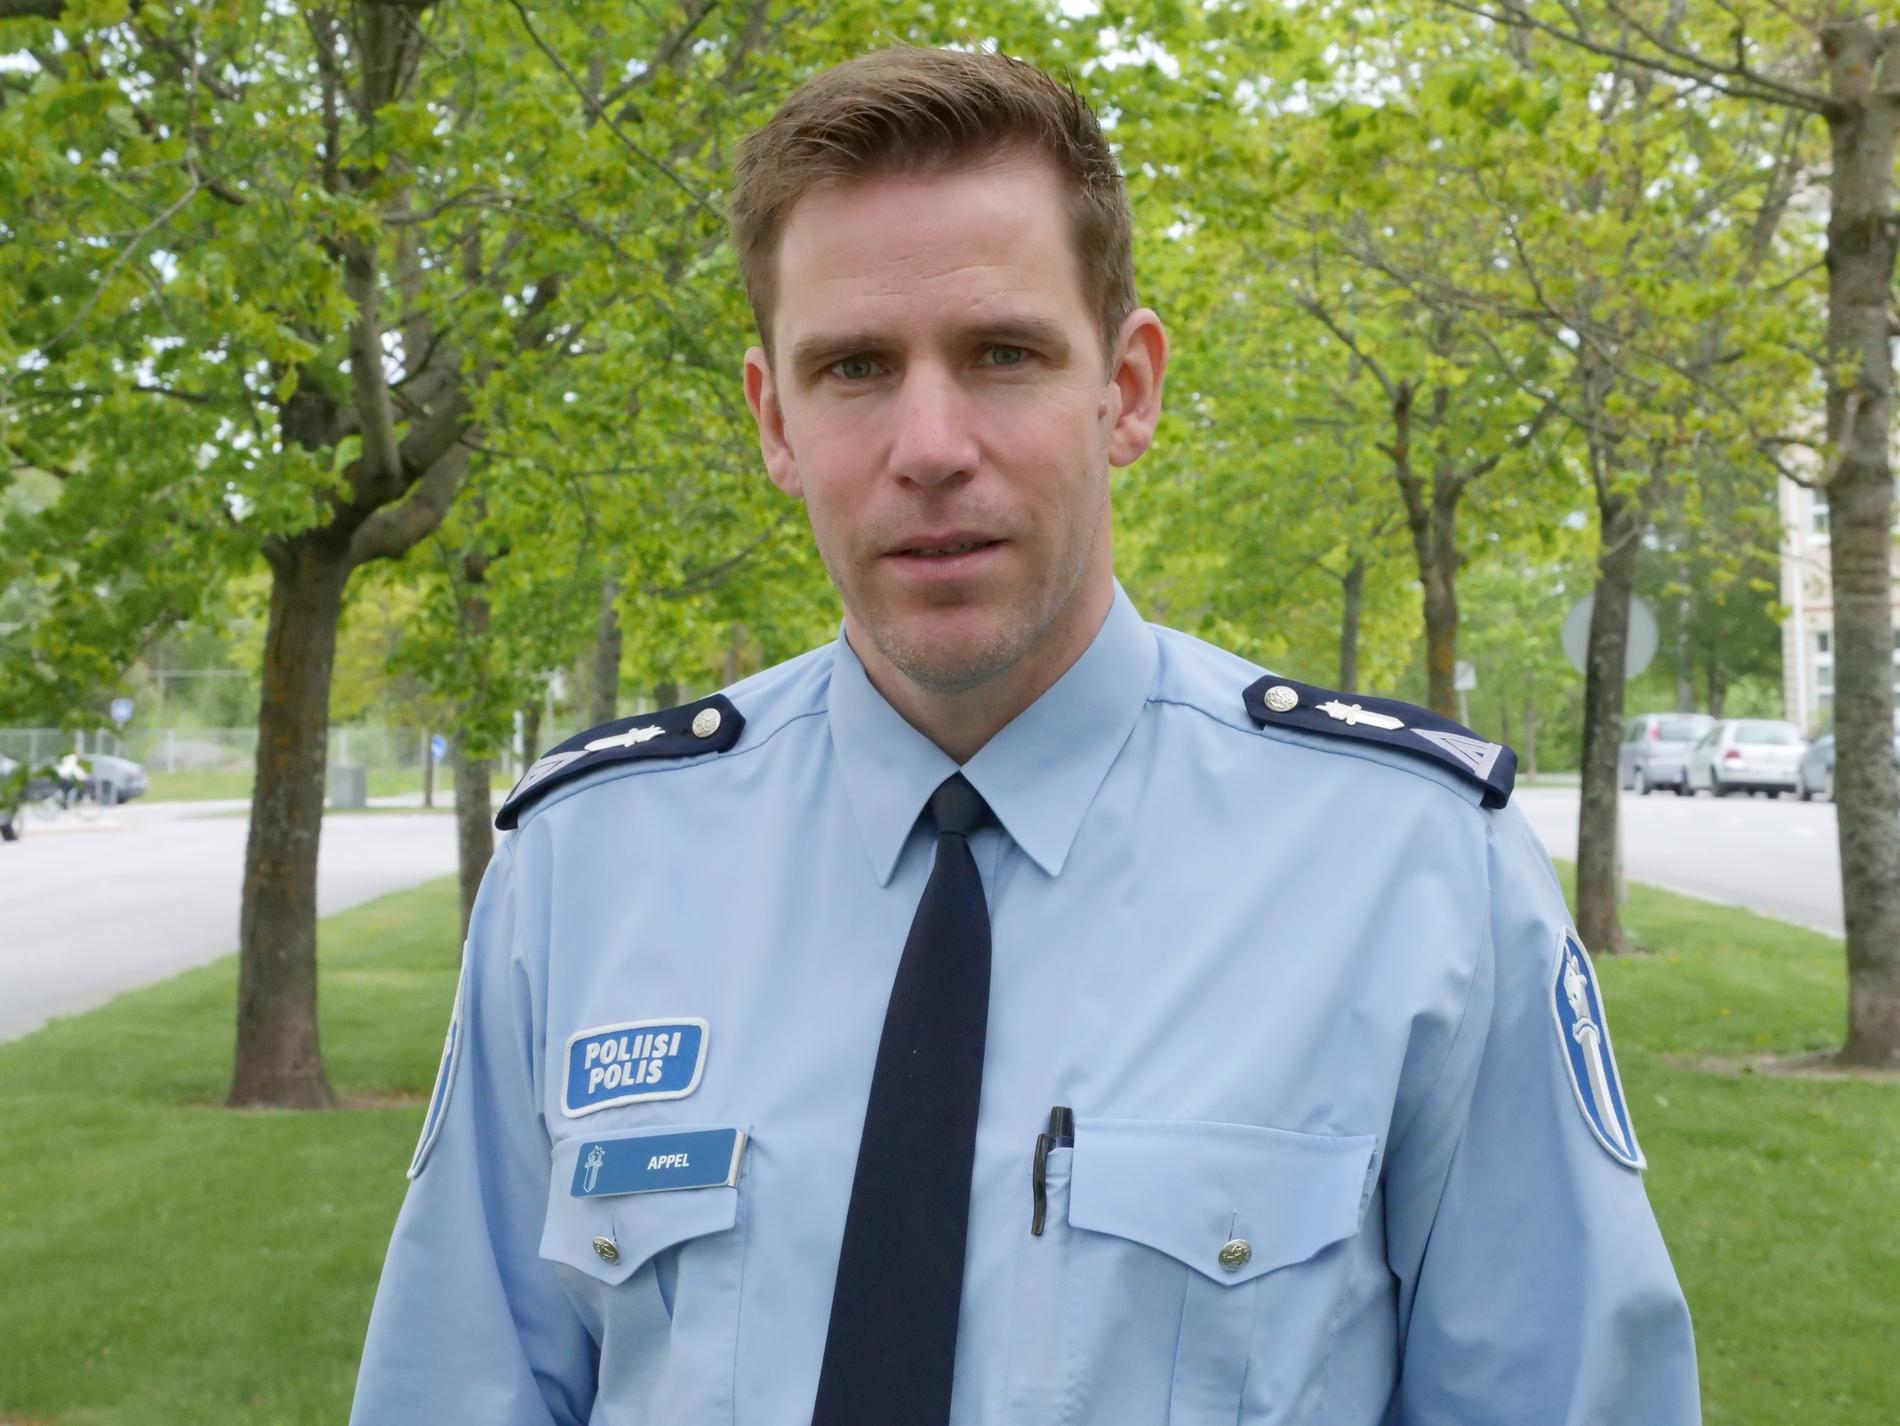 Att snusa är inte brottsligt. Mikael Appel, kommunikationschef hos polisen i Österbotten, säger att flera inom polisen också snusar.